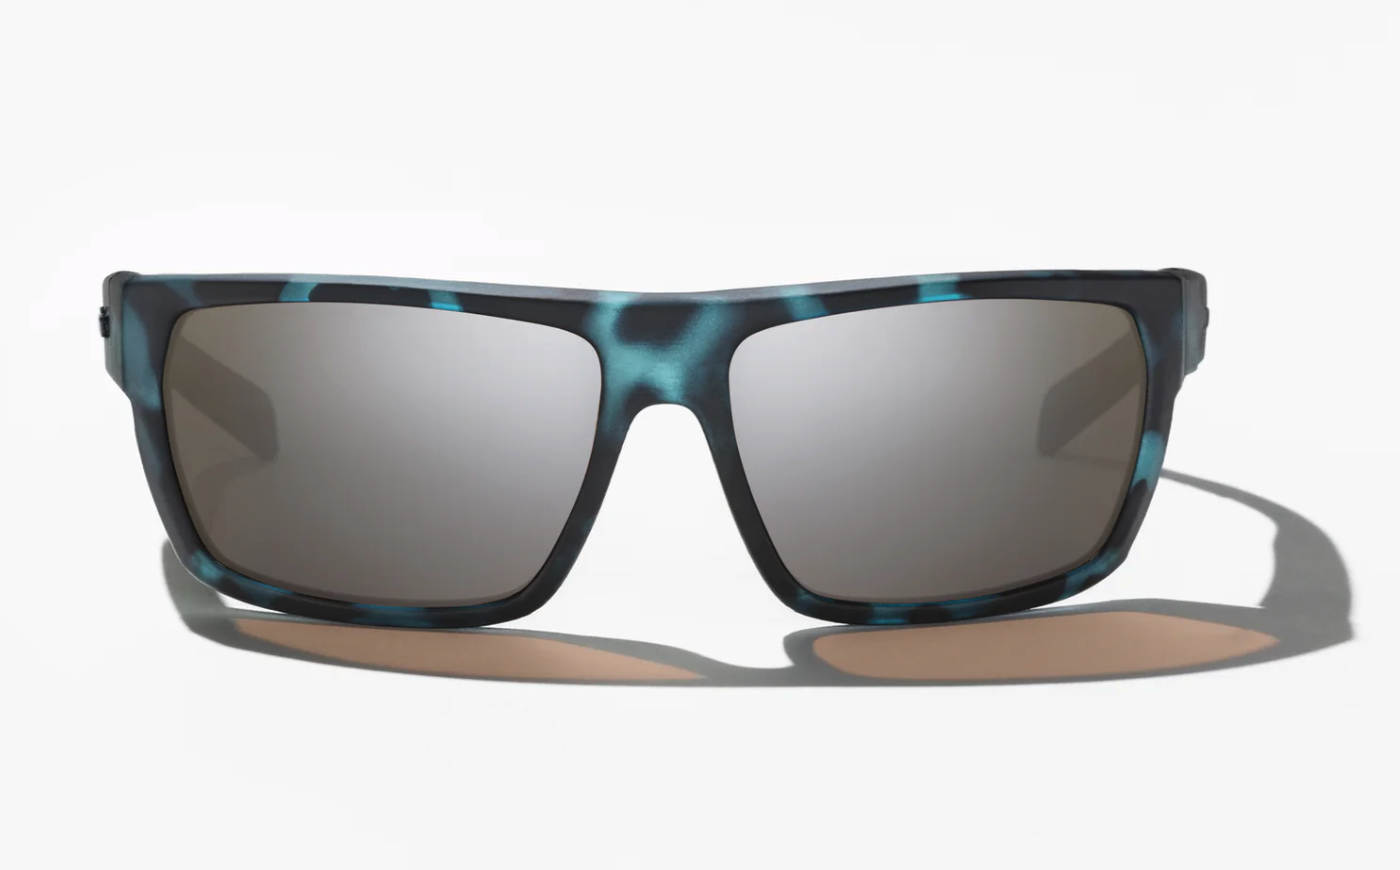 Bajio Bales Beach Polarized Sunglasses in Gray Camo Matte